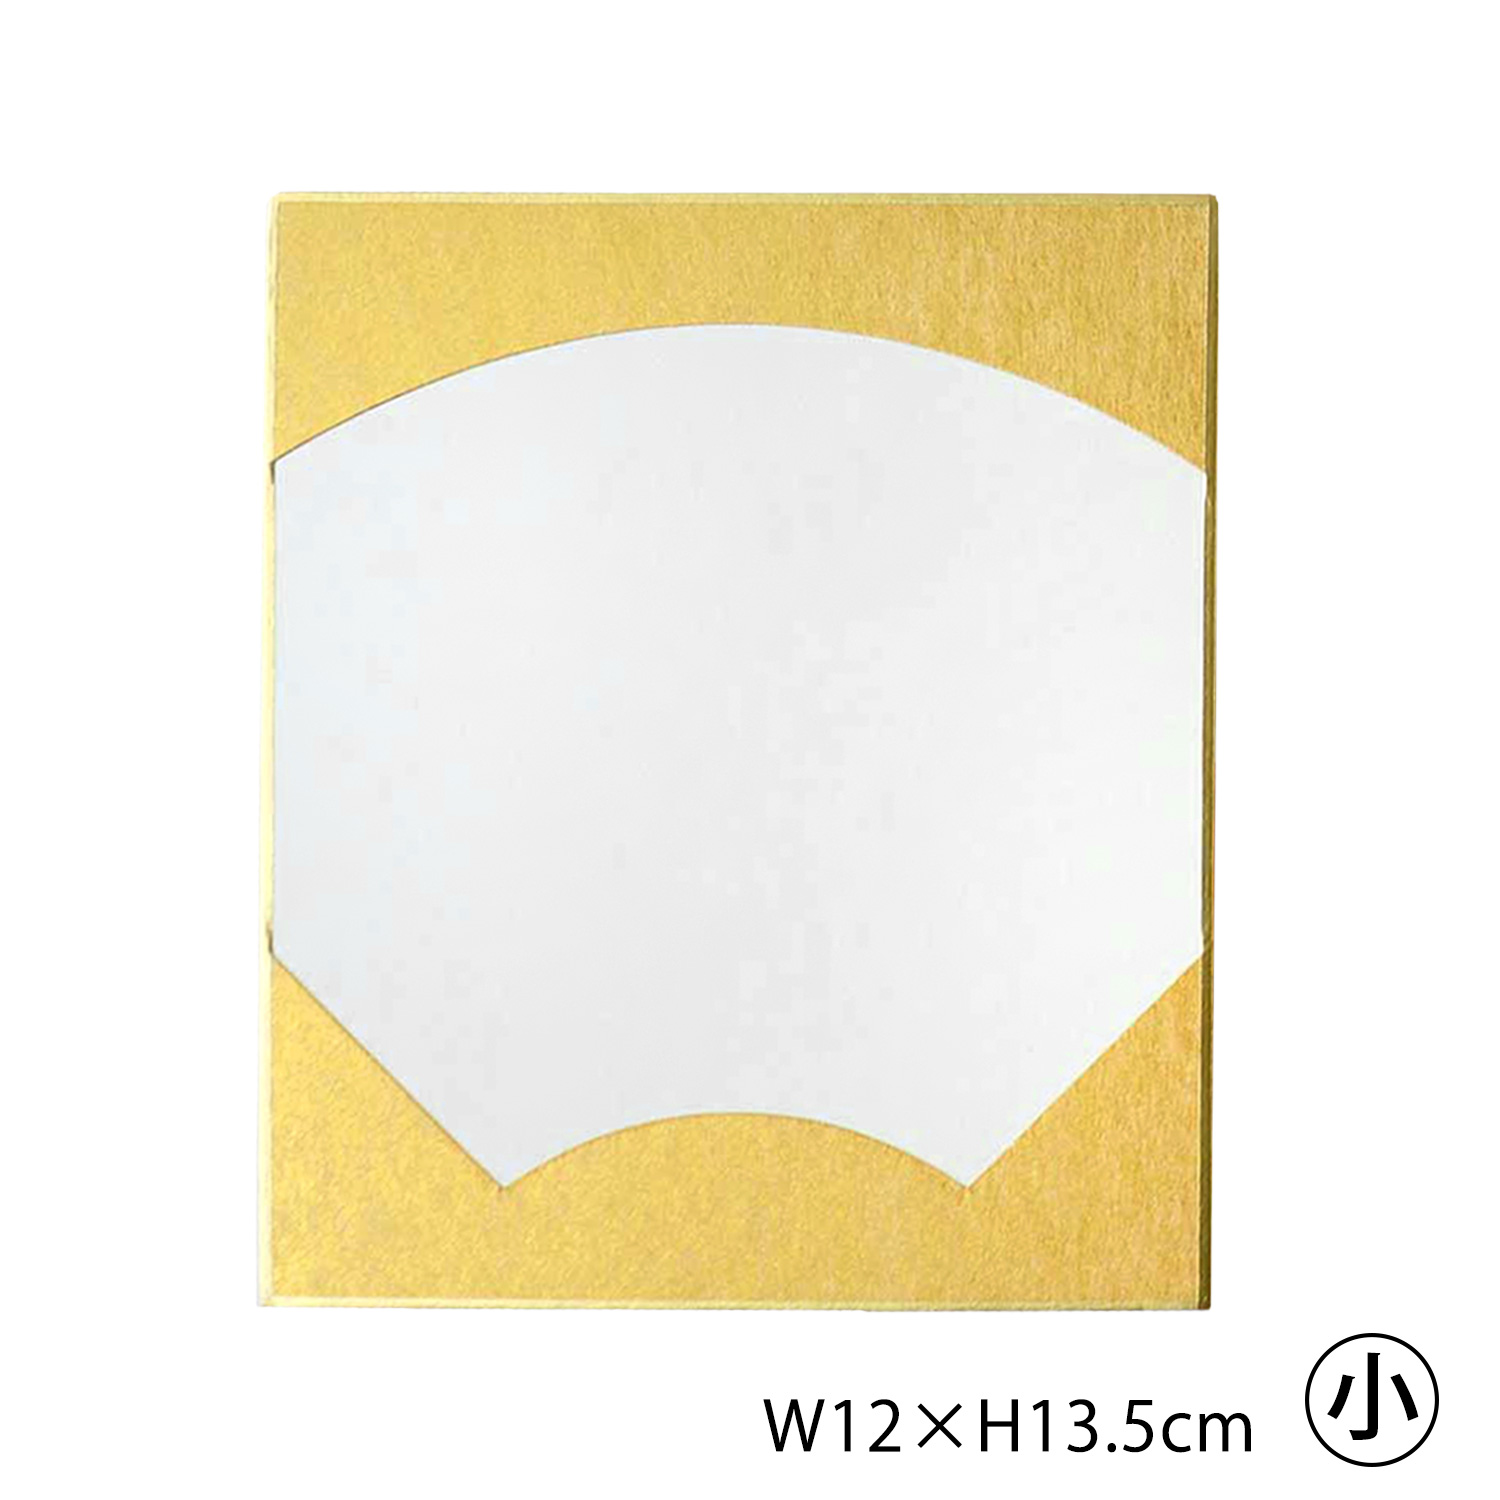 S36-12 colored paper W12×H13.5cm (pcs)